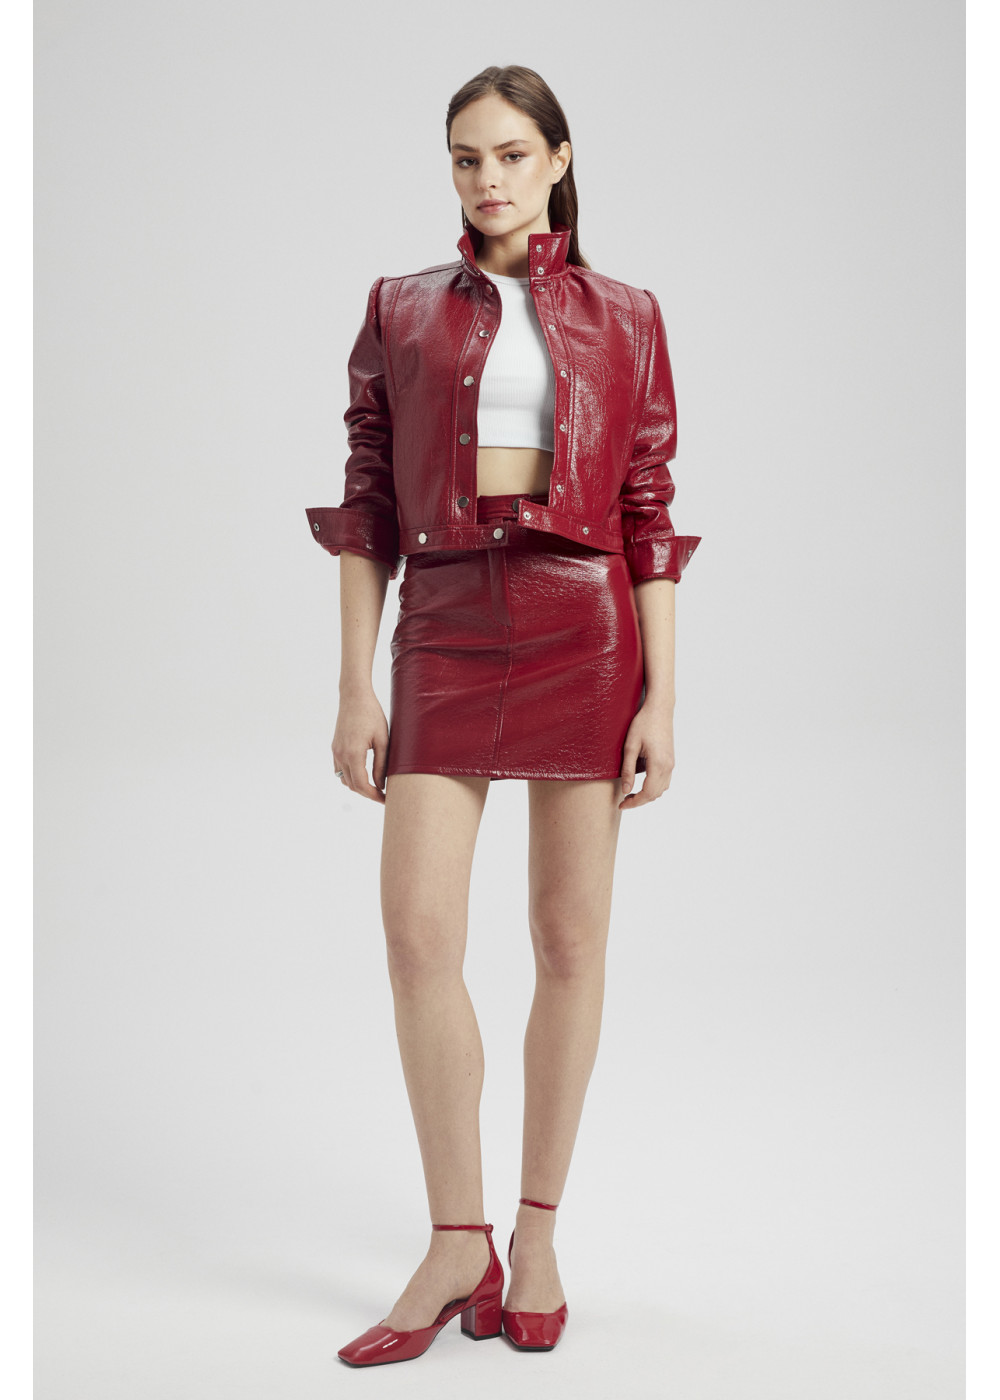 Pleated Leather Jacket,Pleated Mini Skirt